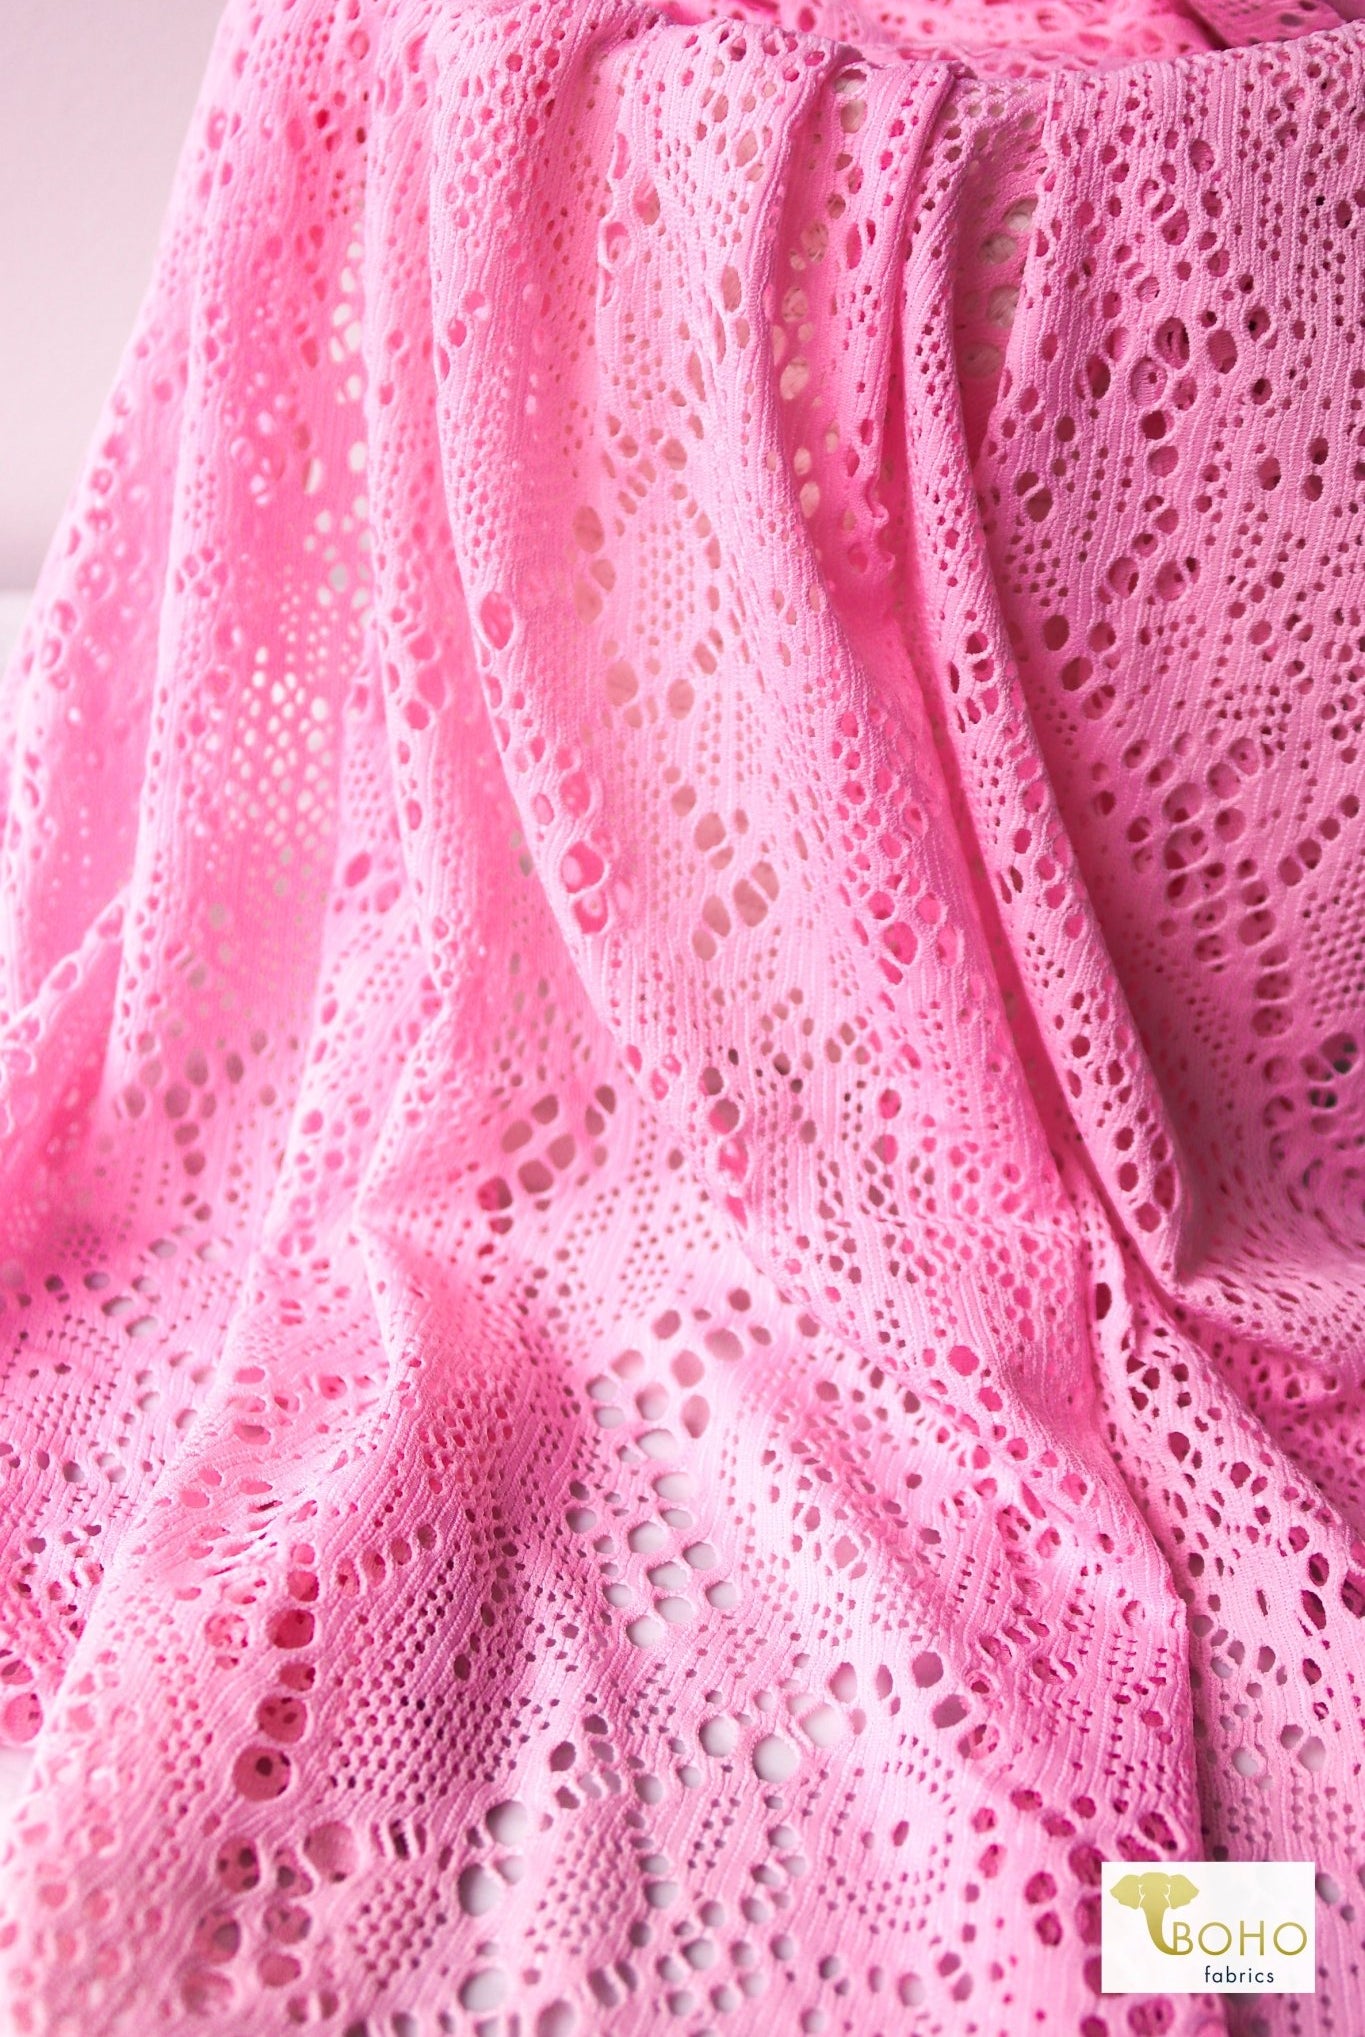 Cresendo in Rose Pink, Stretch Lace Fabric - Boho Fabrics - Stretch Lace Fabric